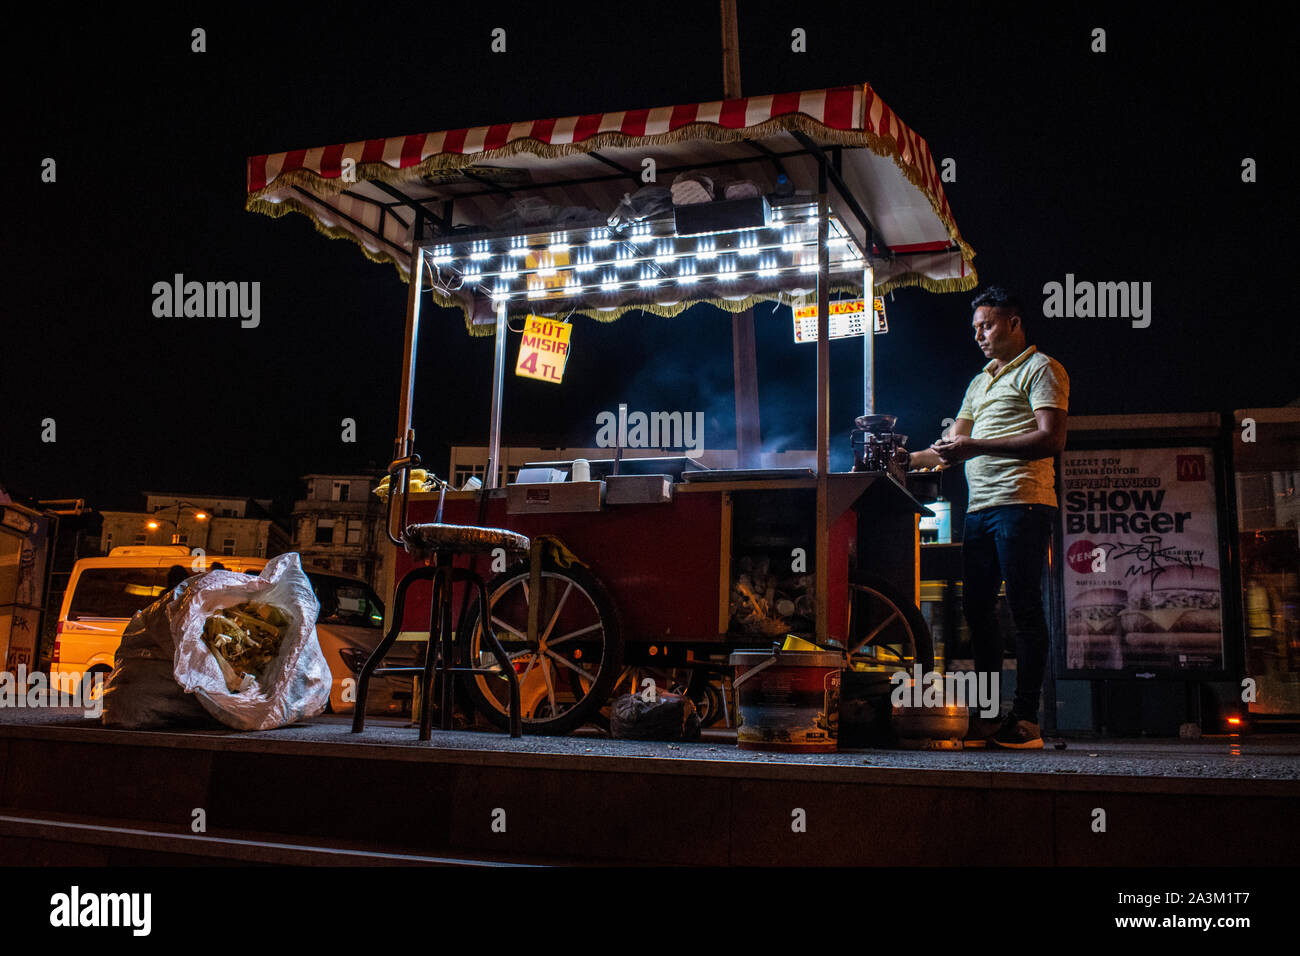 Istanbul : la vie nocturne dans la ville et de l'alimentation de rue, un vendeur de maïs bouilli et rôti avec son kiosque à rayures rouges et blanches dans les rues d'Istanbul Banque D'Images